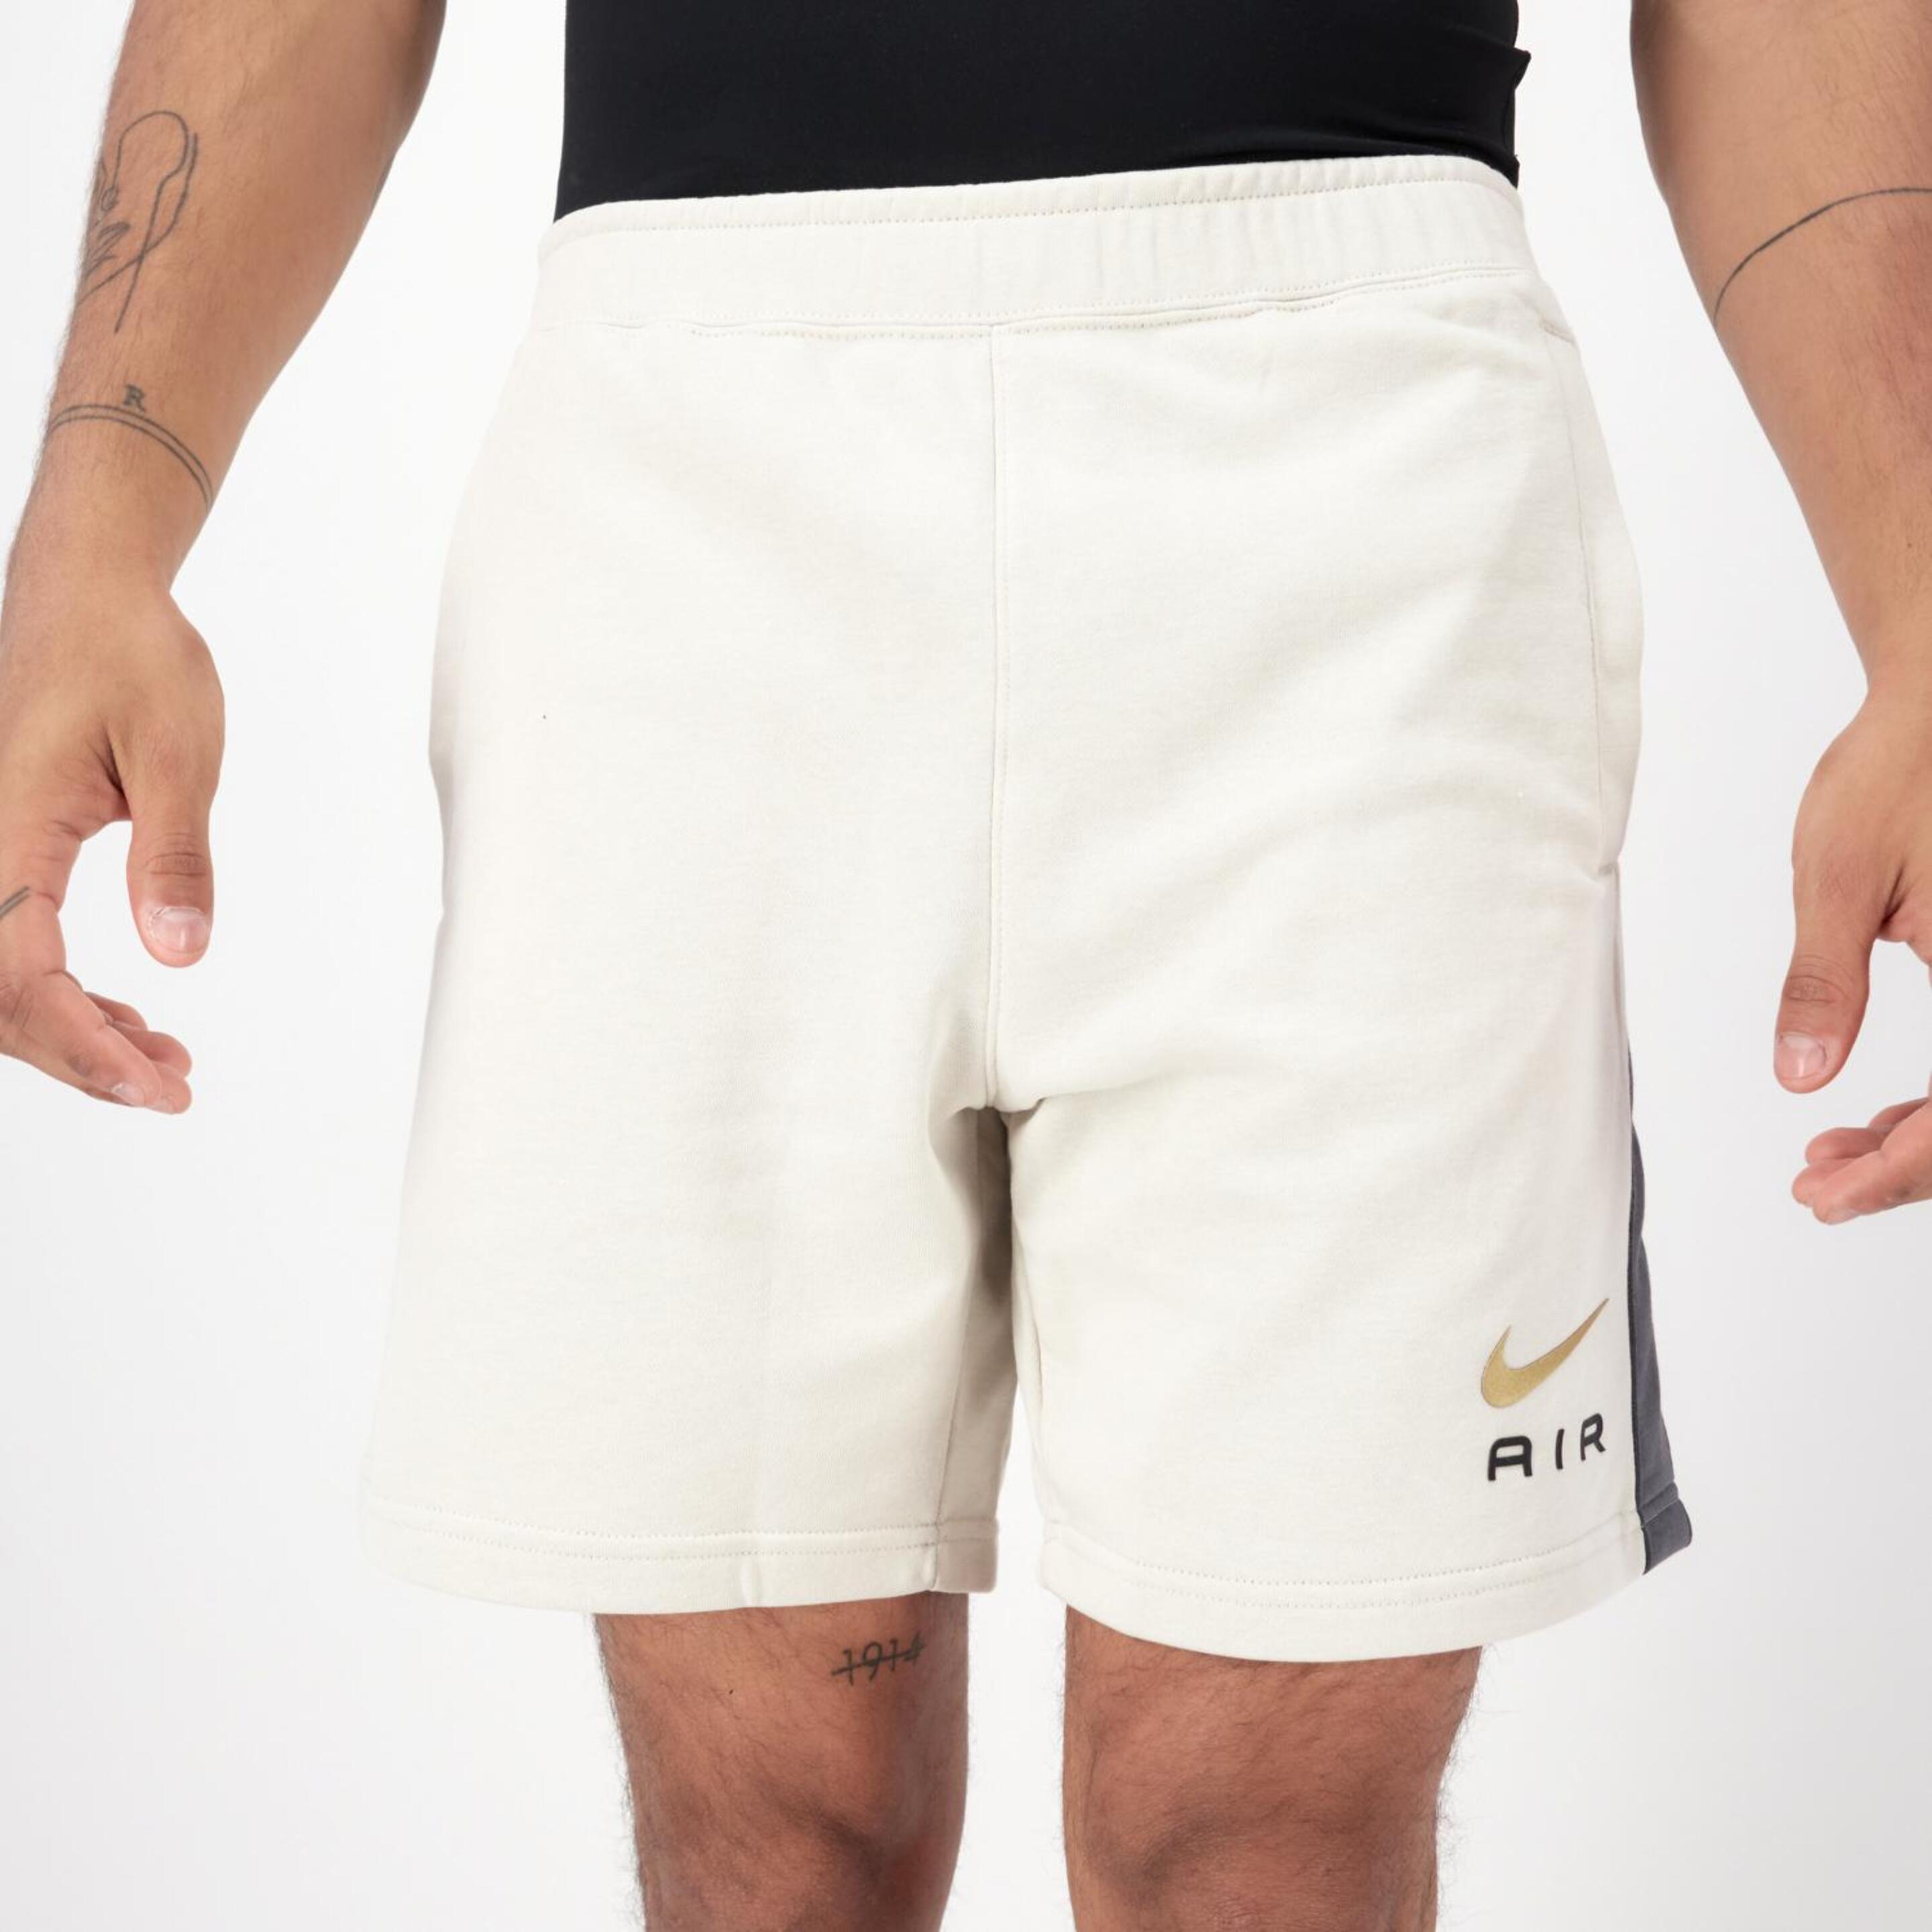 Nike Air - marron - Pantalón Corto Hombre